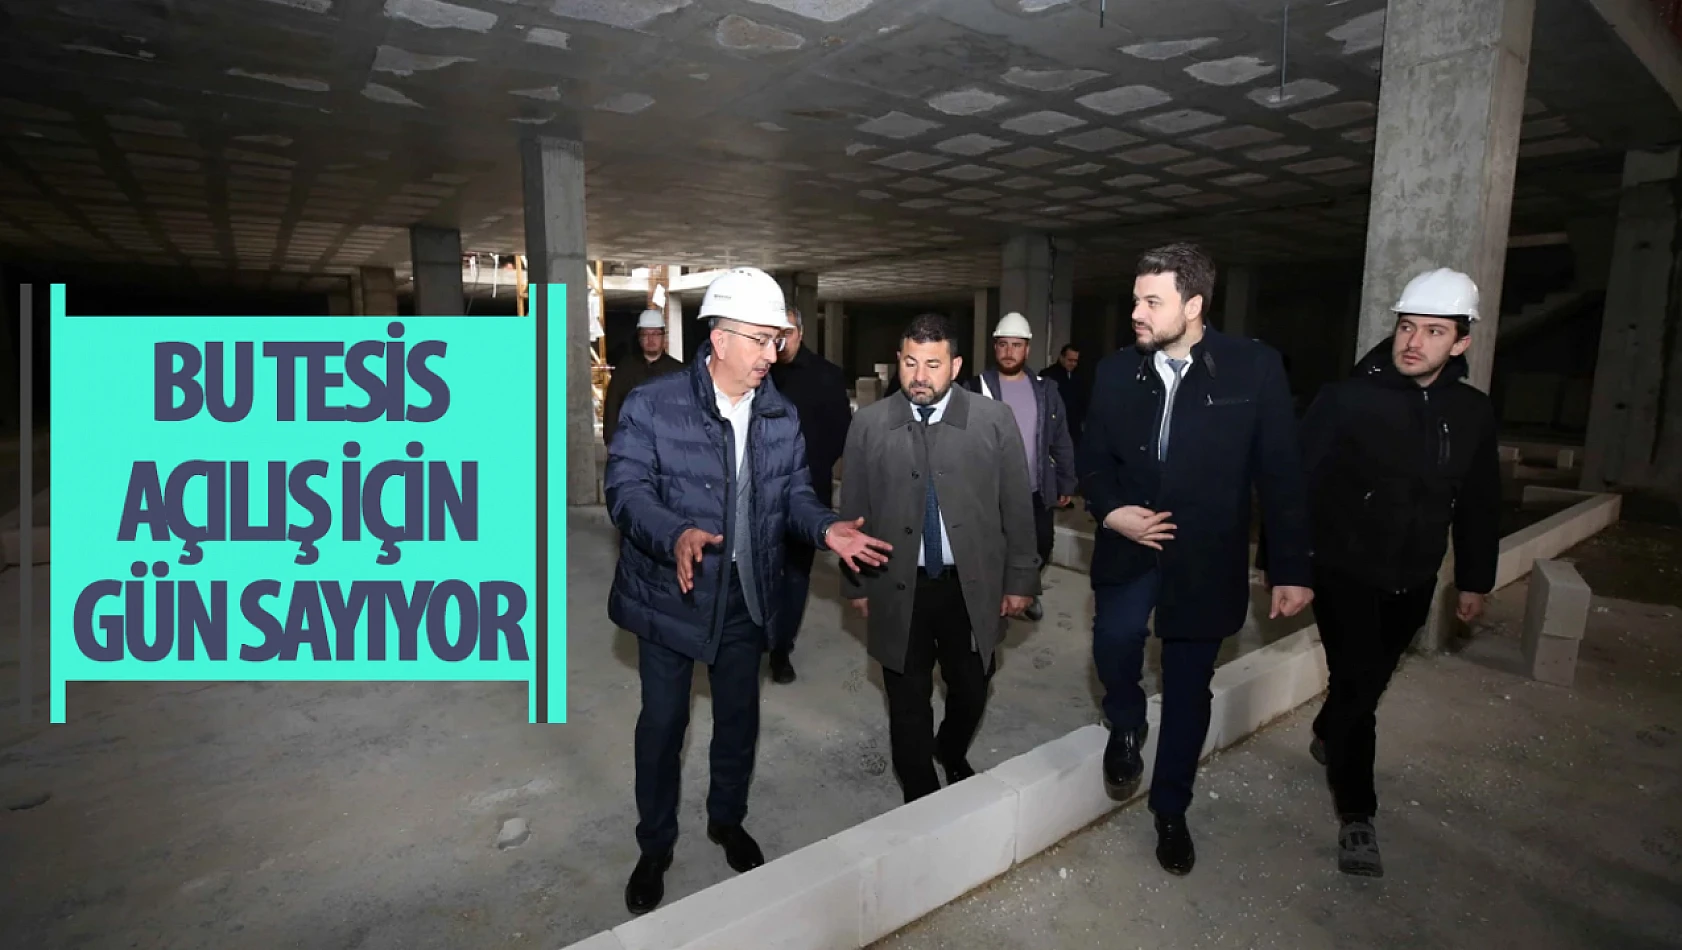 Konya'daki bu tesis açılış için gün sayıyor! Çok farklı konseptiyle bu tesiste yok yok!